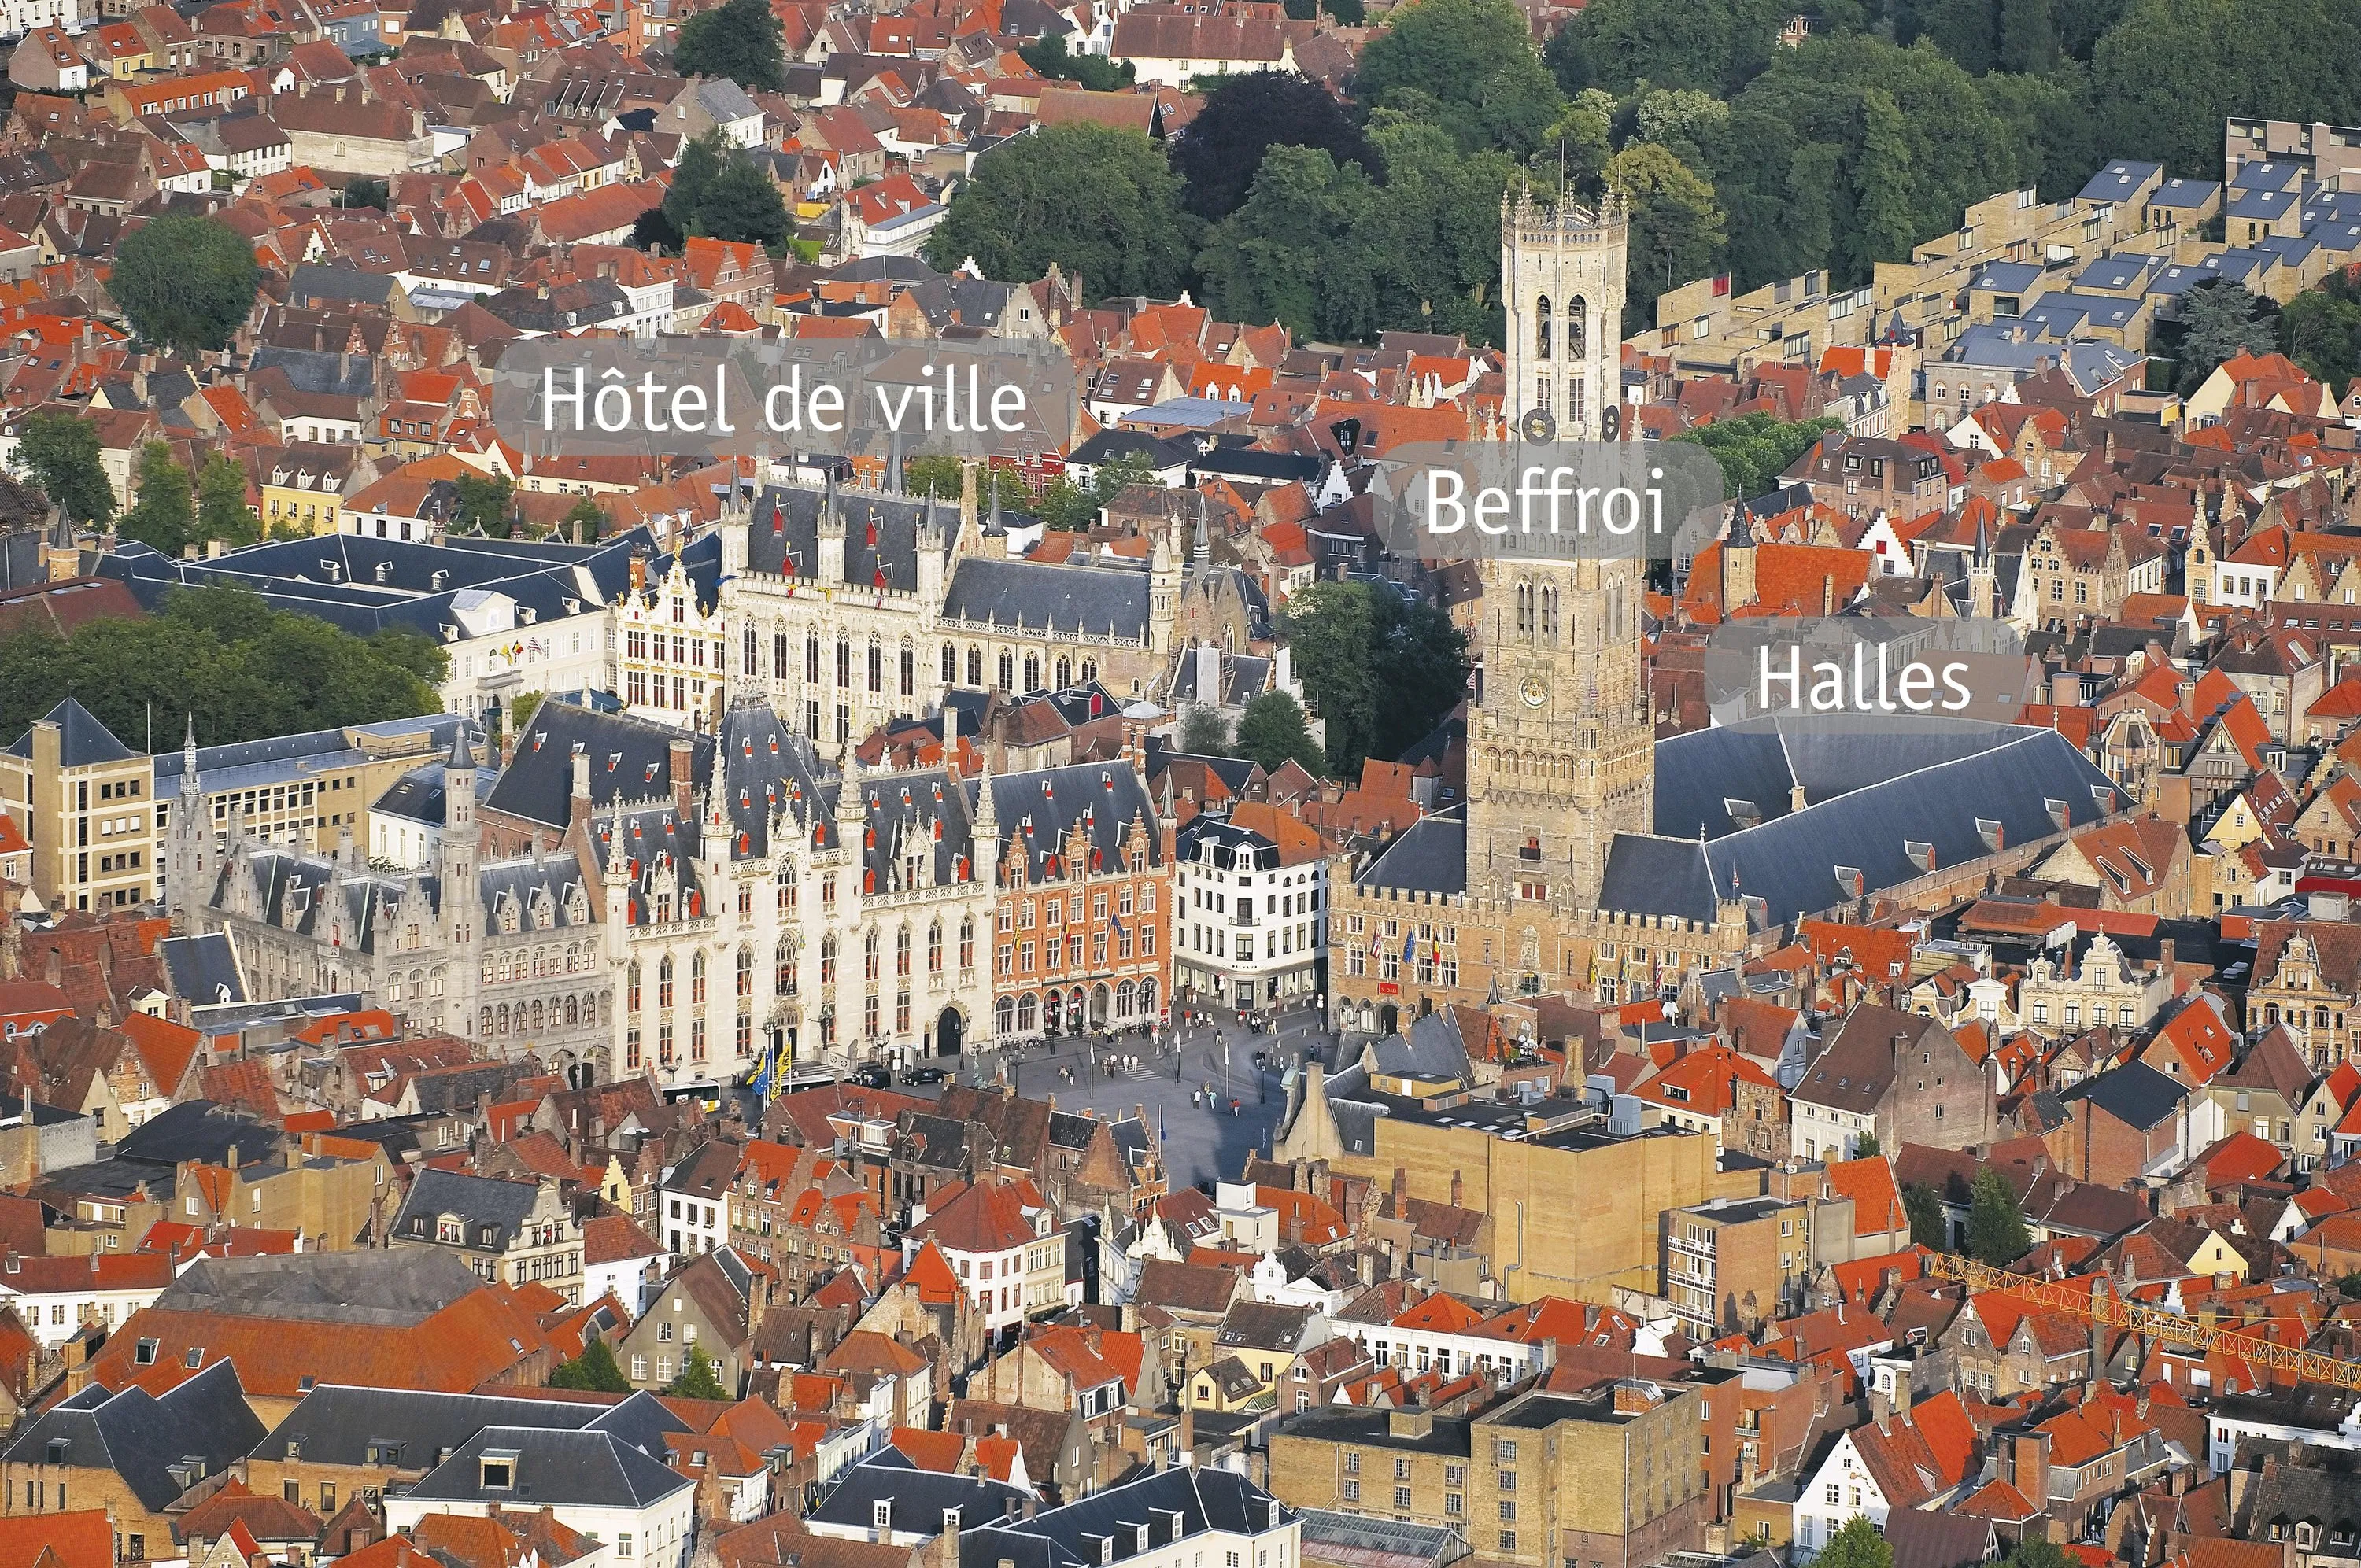 Plan de la ville et activités marchandes : l'expansion de Bruges